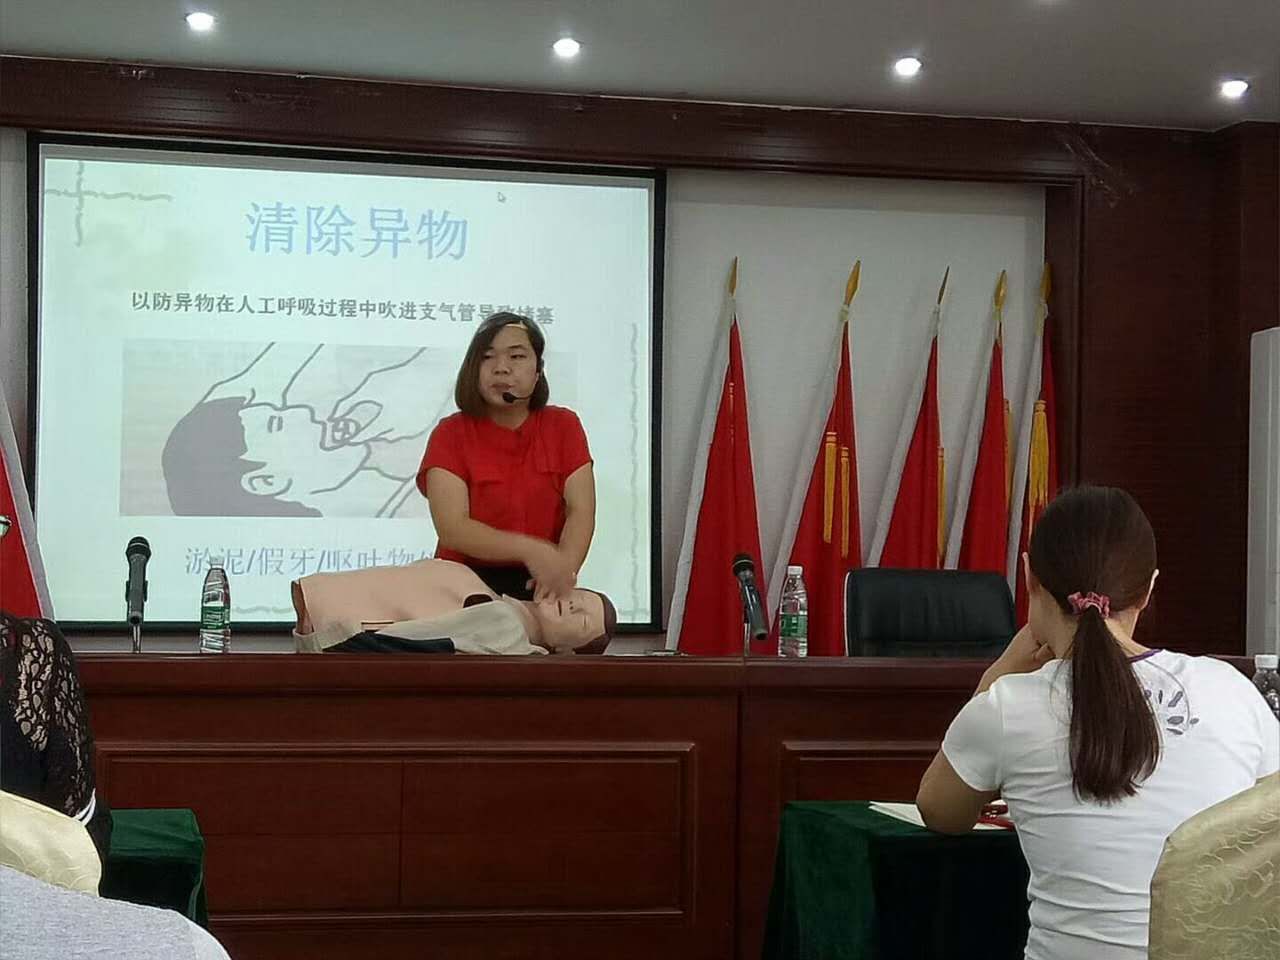 九江津晶城科技园举行以“紧急救护、关爱健康”为主题的知识讲座